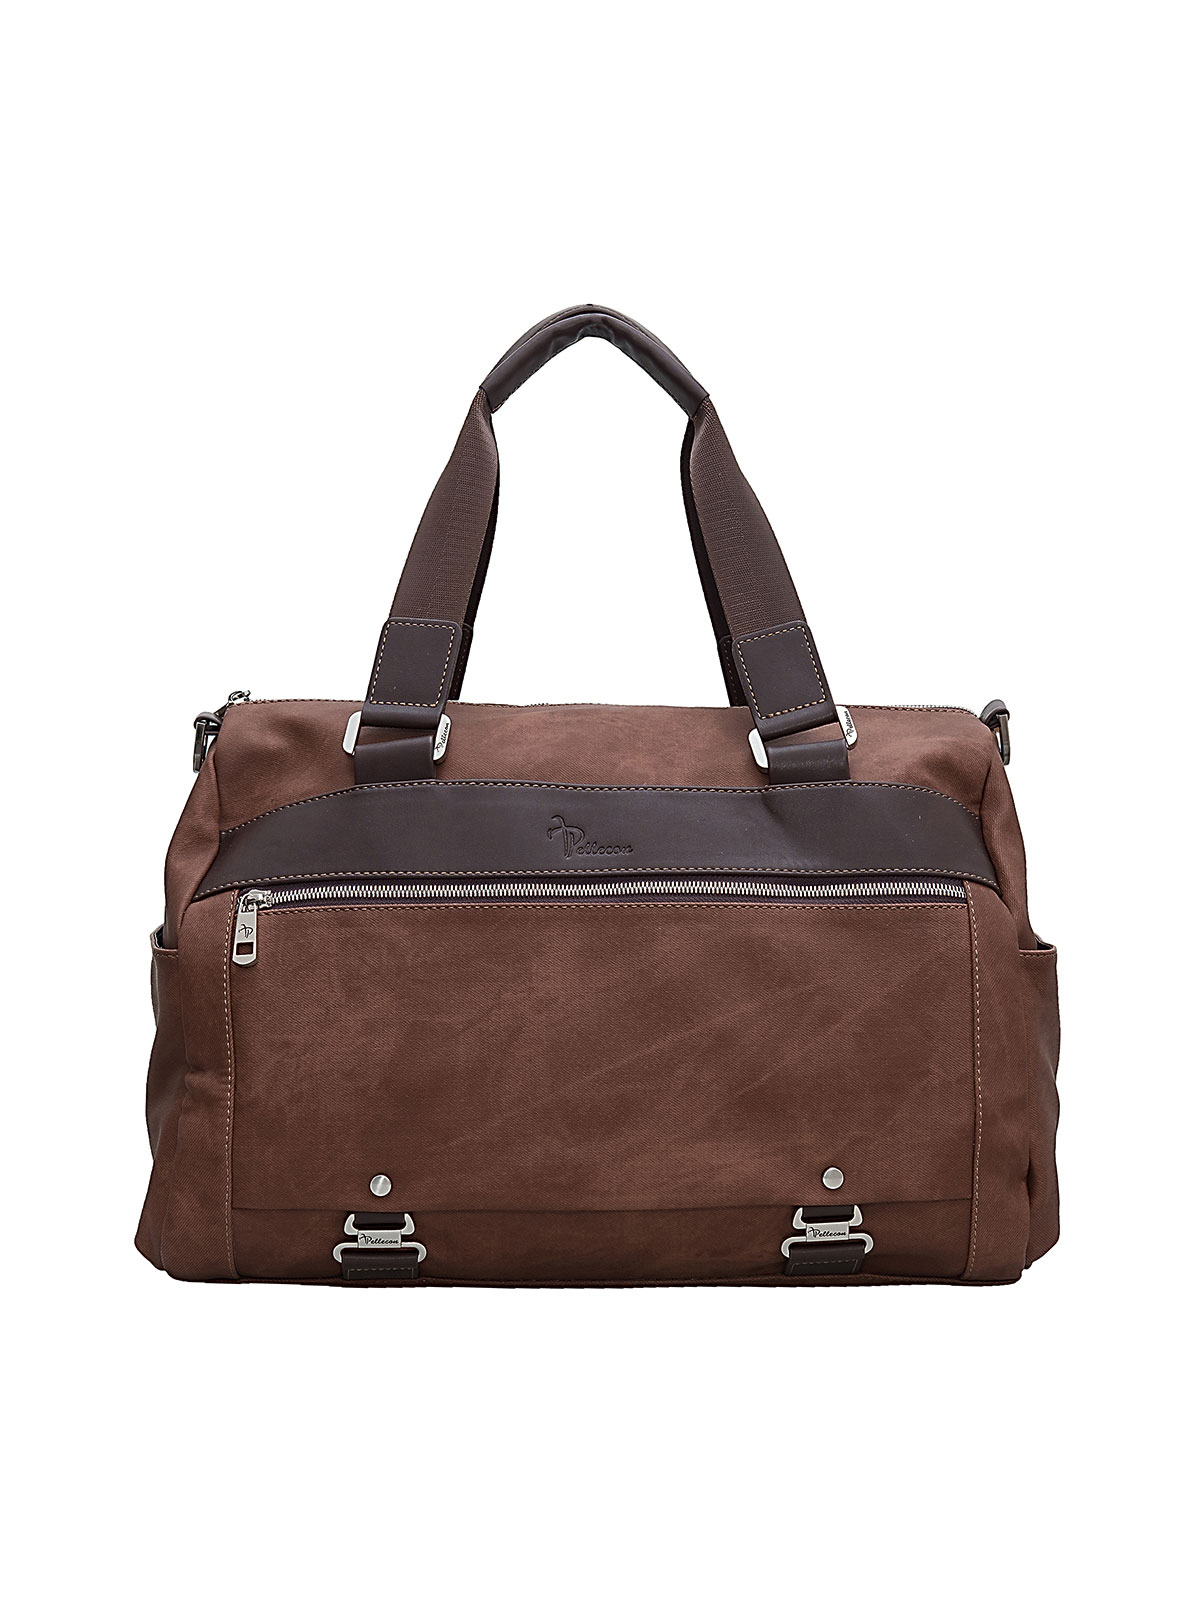 Дорожная сумка унисекс Pellecon 626 коричневая, 40х30х20 см